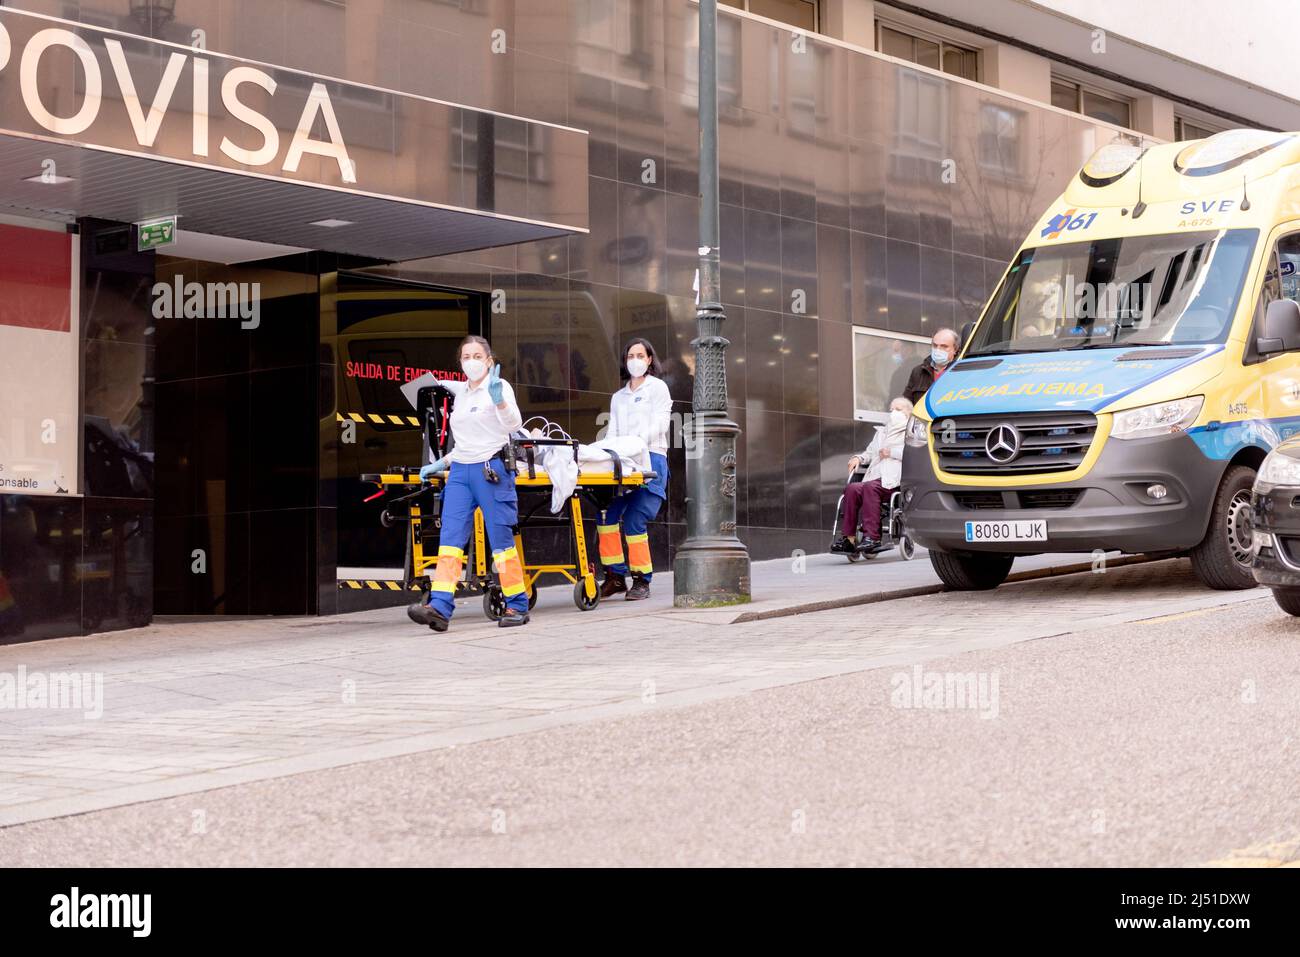 Vigo, pontevedra, spanien - dezember 17: Zwei Mädchen des Notdienstes gehen mit einem Patienten an der Notaufnahme des Povisa-Krankenhauses an Stockfoto